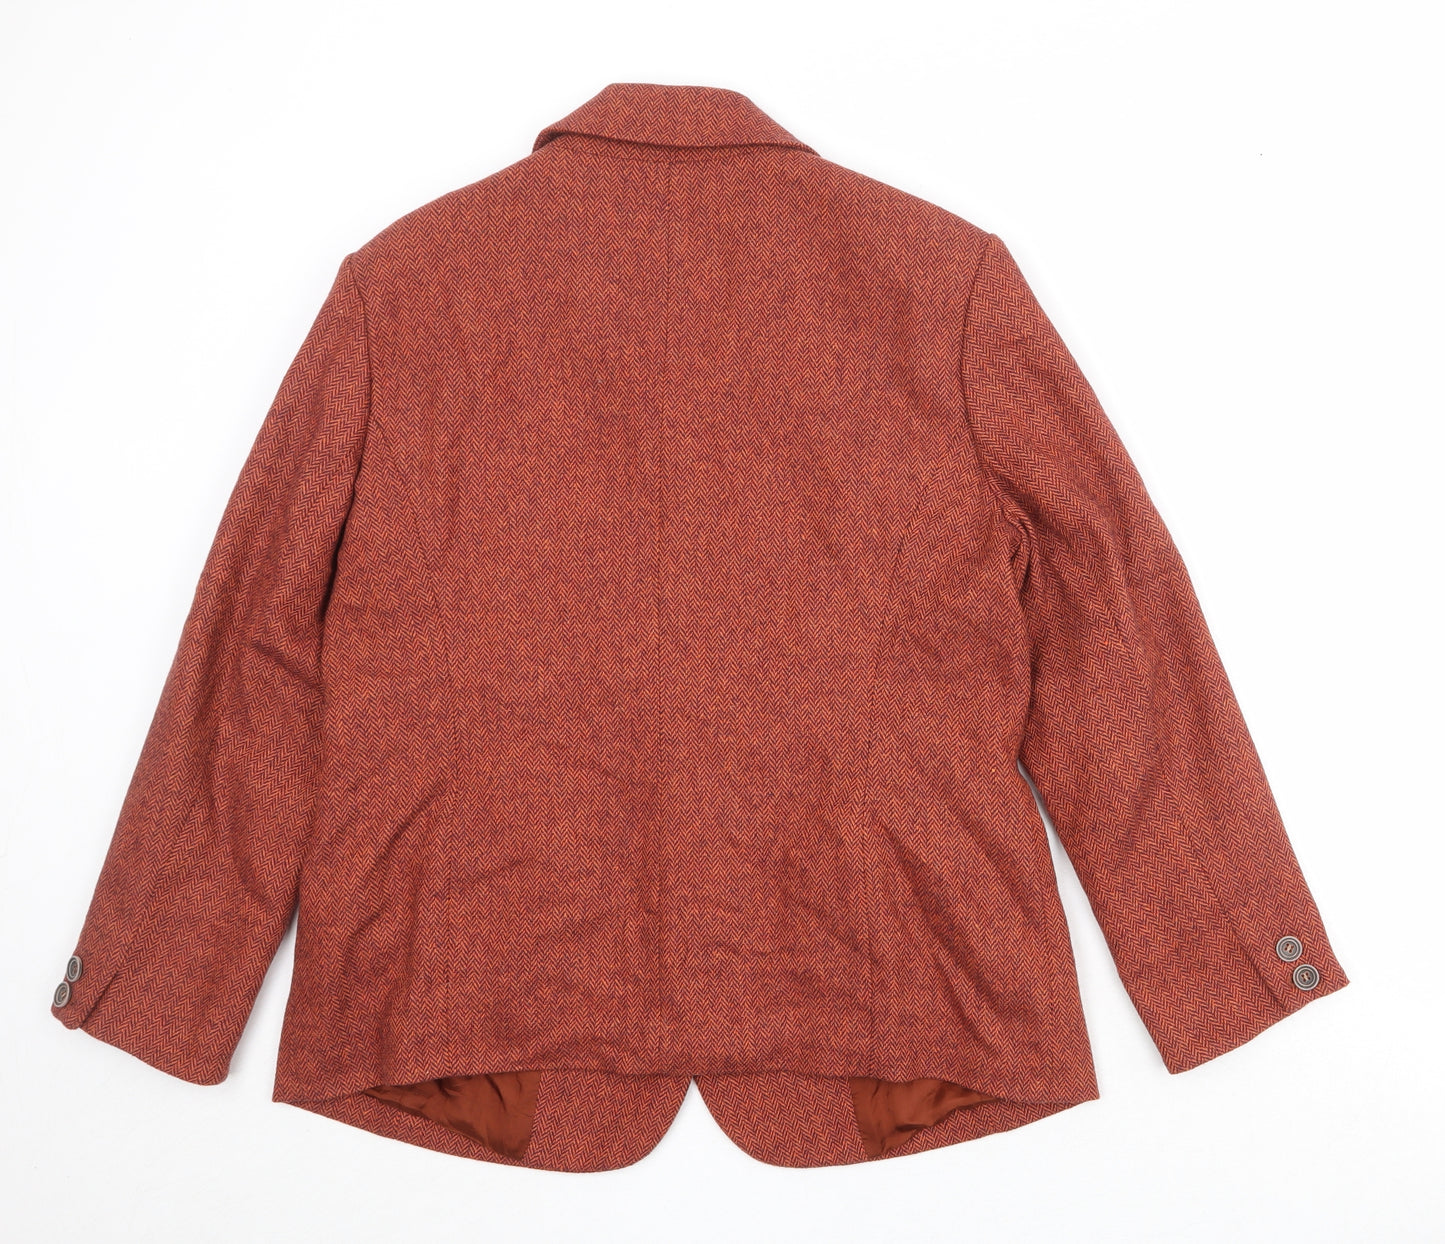 Madeleine Womens Orange Polyester Jacket Suit Jacket Size M